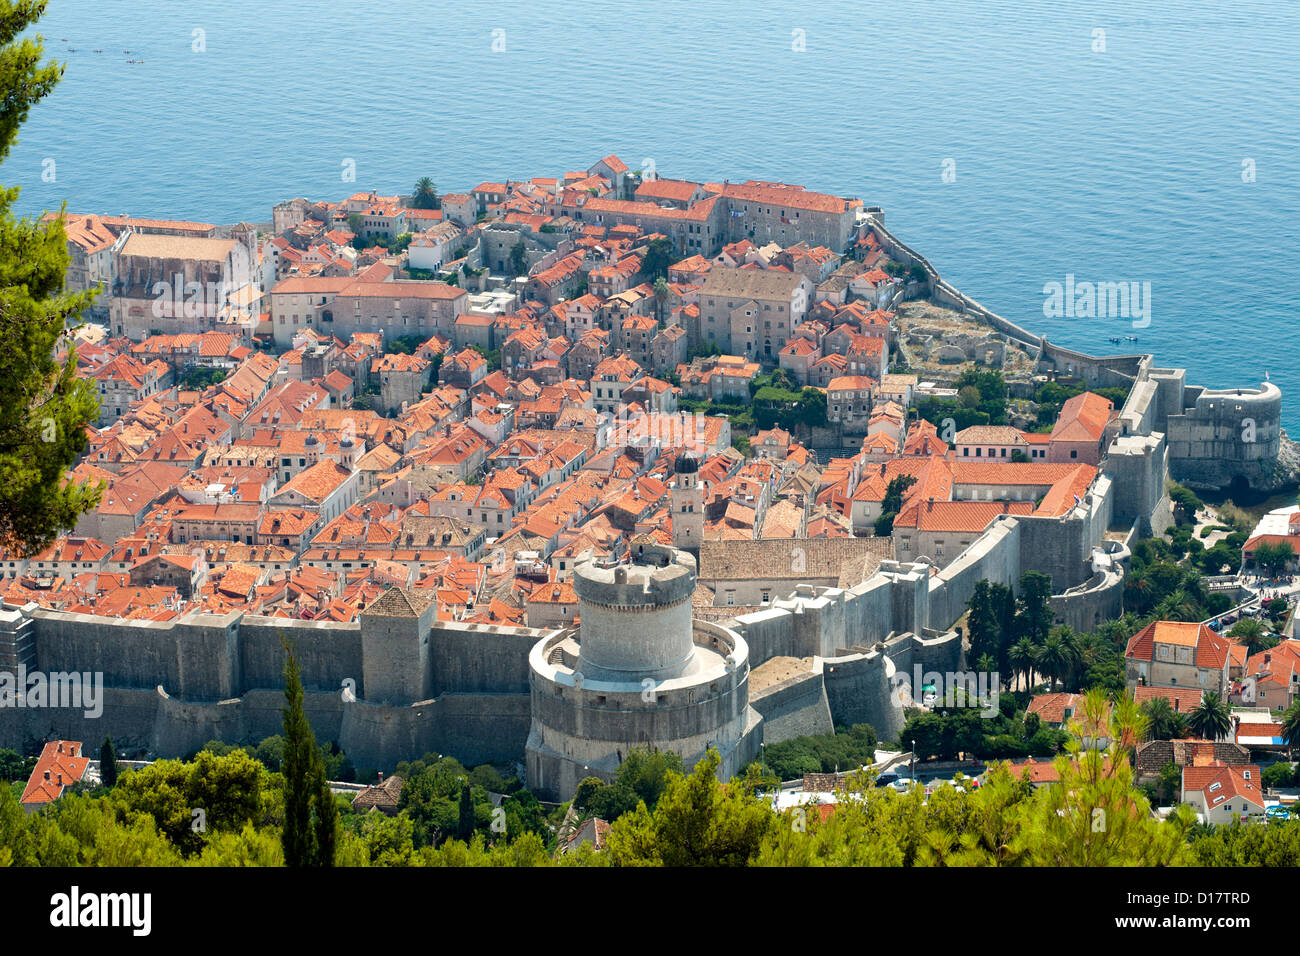 Vue de la tour Minčeta et la vieille ville dans la ville de Dubrovnik, sur la côte Adriatique de Croatie. Banque D'Images